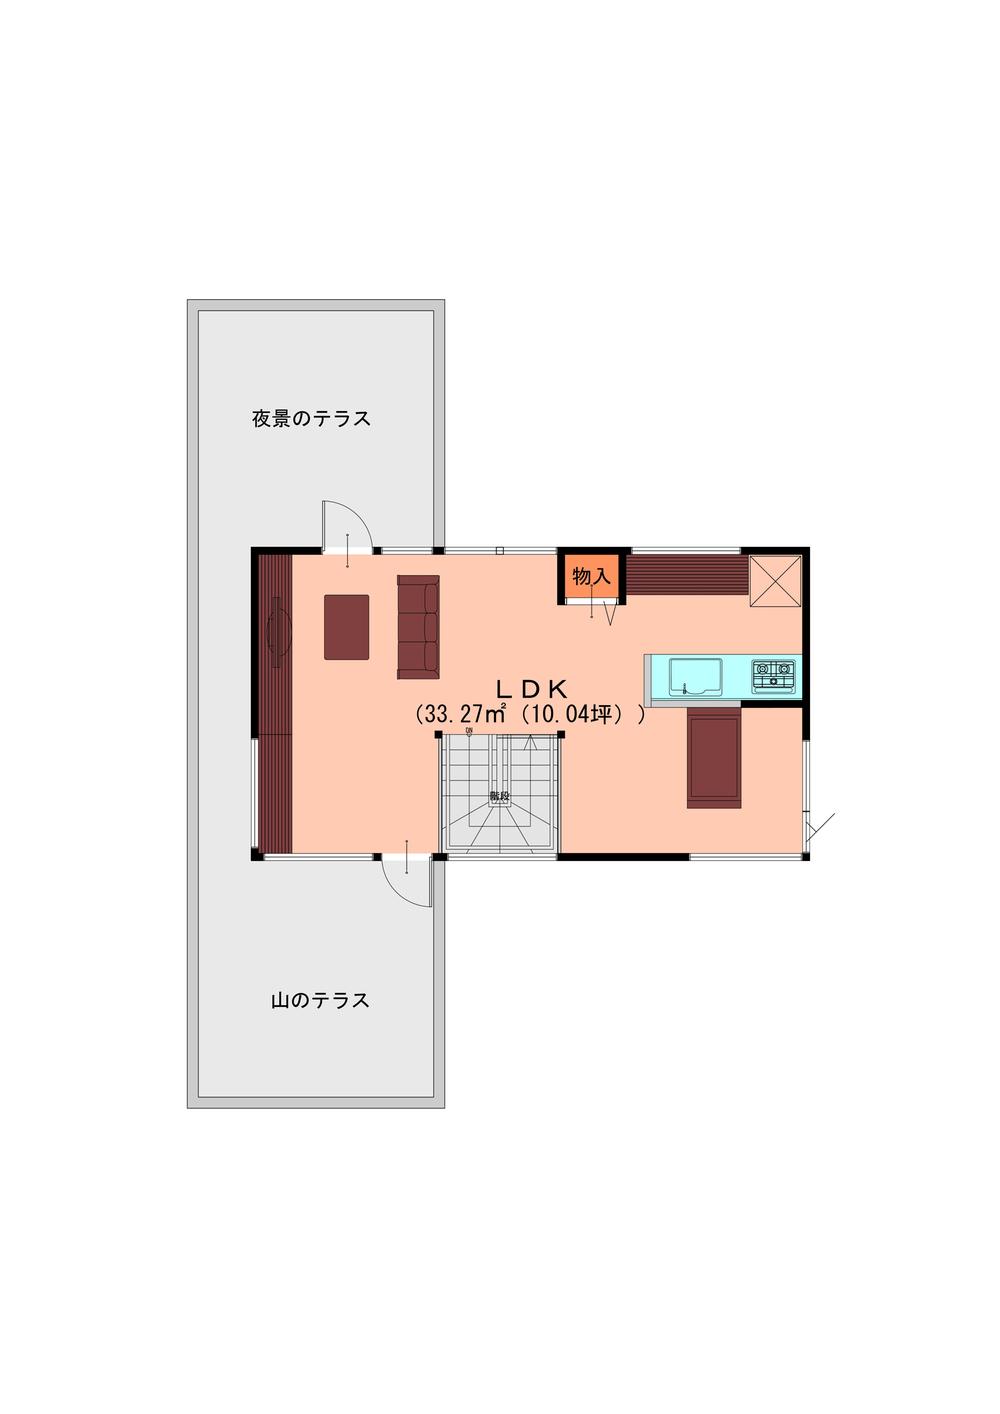 Building plan example (floor plan). Building plan example (2-floor plan view)